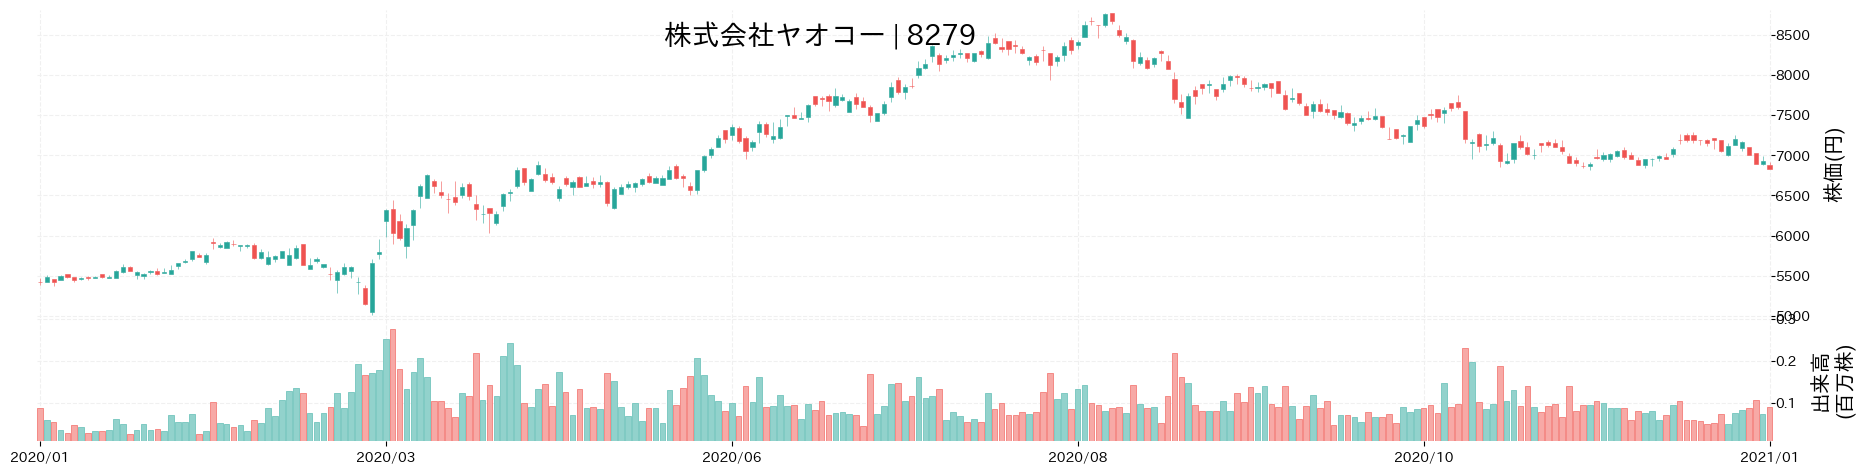 ヤオコーの株価推移(2020)